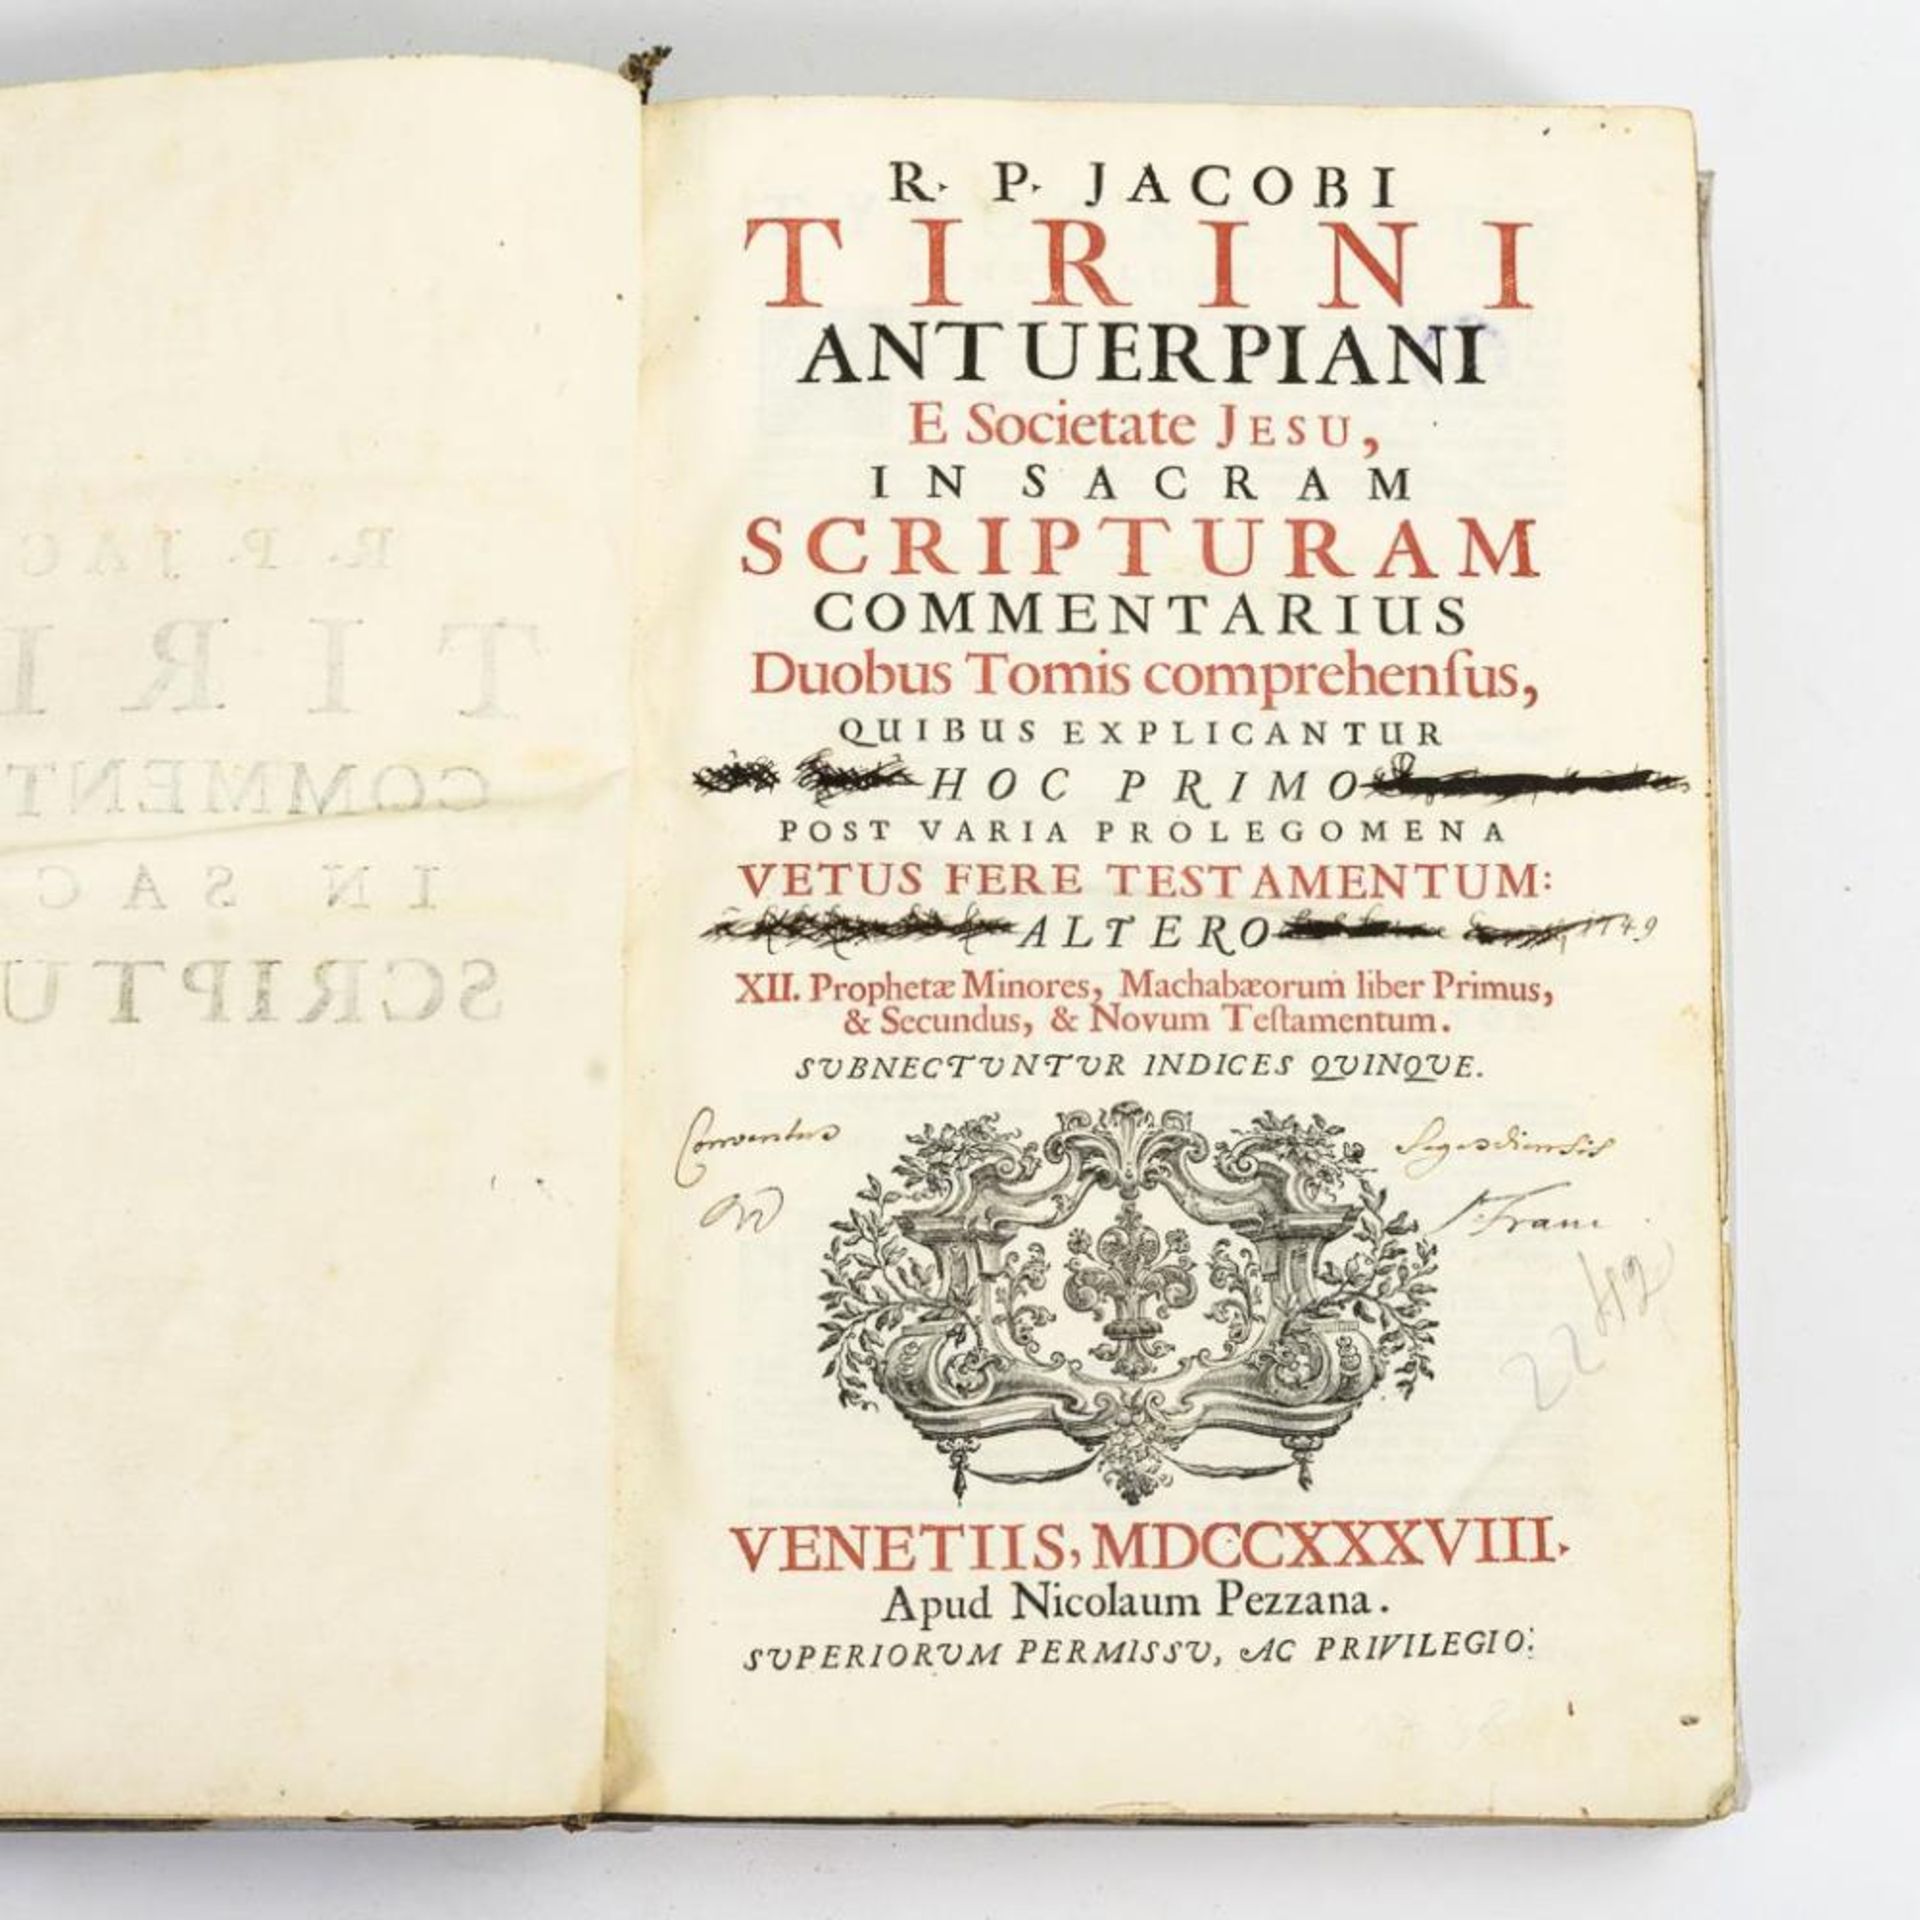 TIRINI, R.P. Jacobi. "In Sacram Scripturam Commentarius".